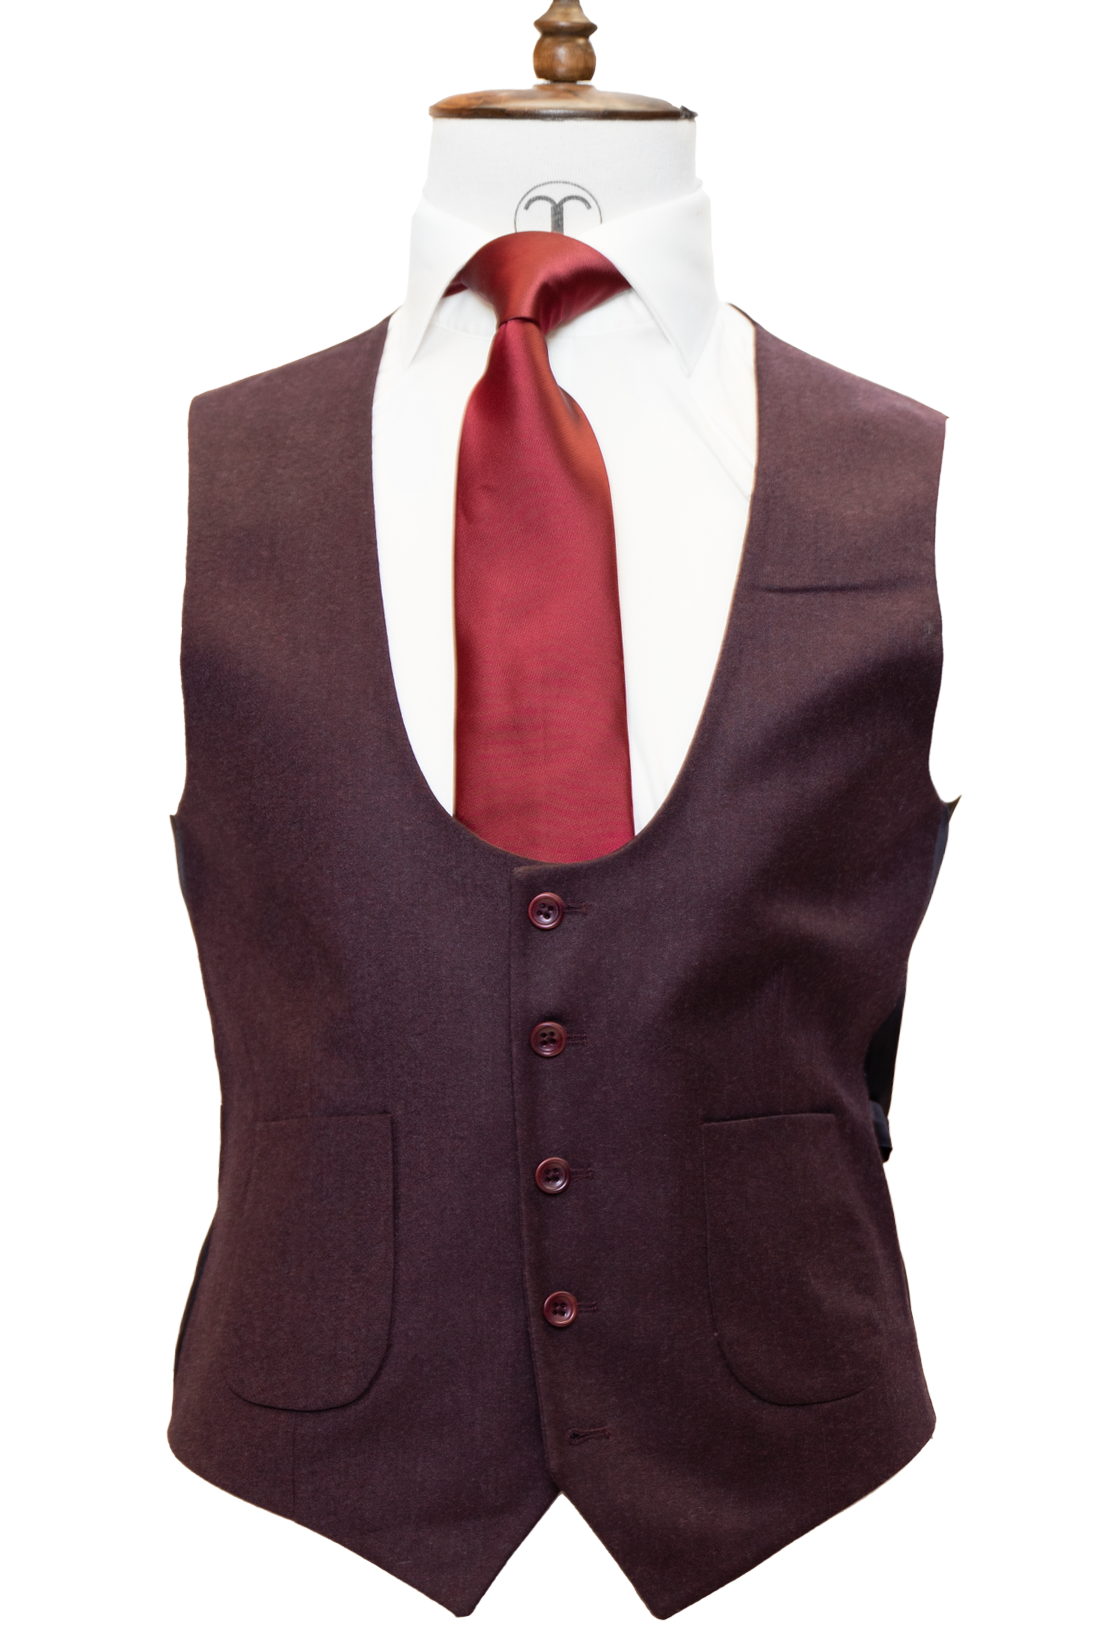 Zignone - Sangria Cashmere 3-Piece Fit Slim Fit Suit with Patch Pockets